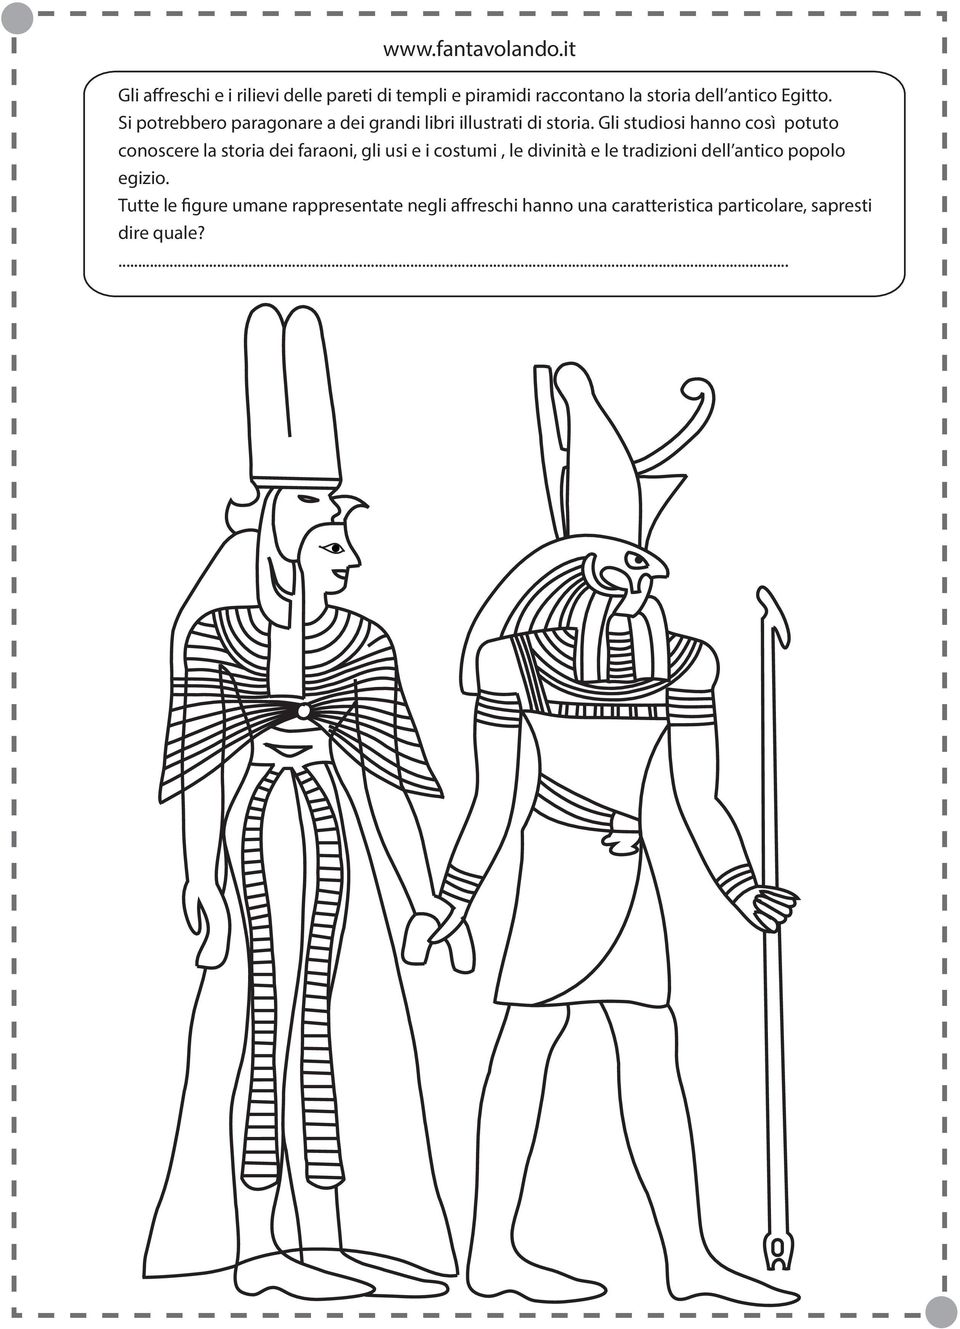 Gli studiosi hanno così potuto conoscere la storia dei faraoni, gli usi e i costumi, le divinità e le